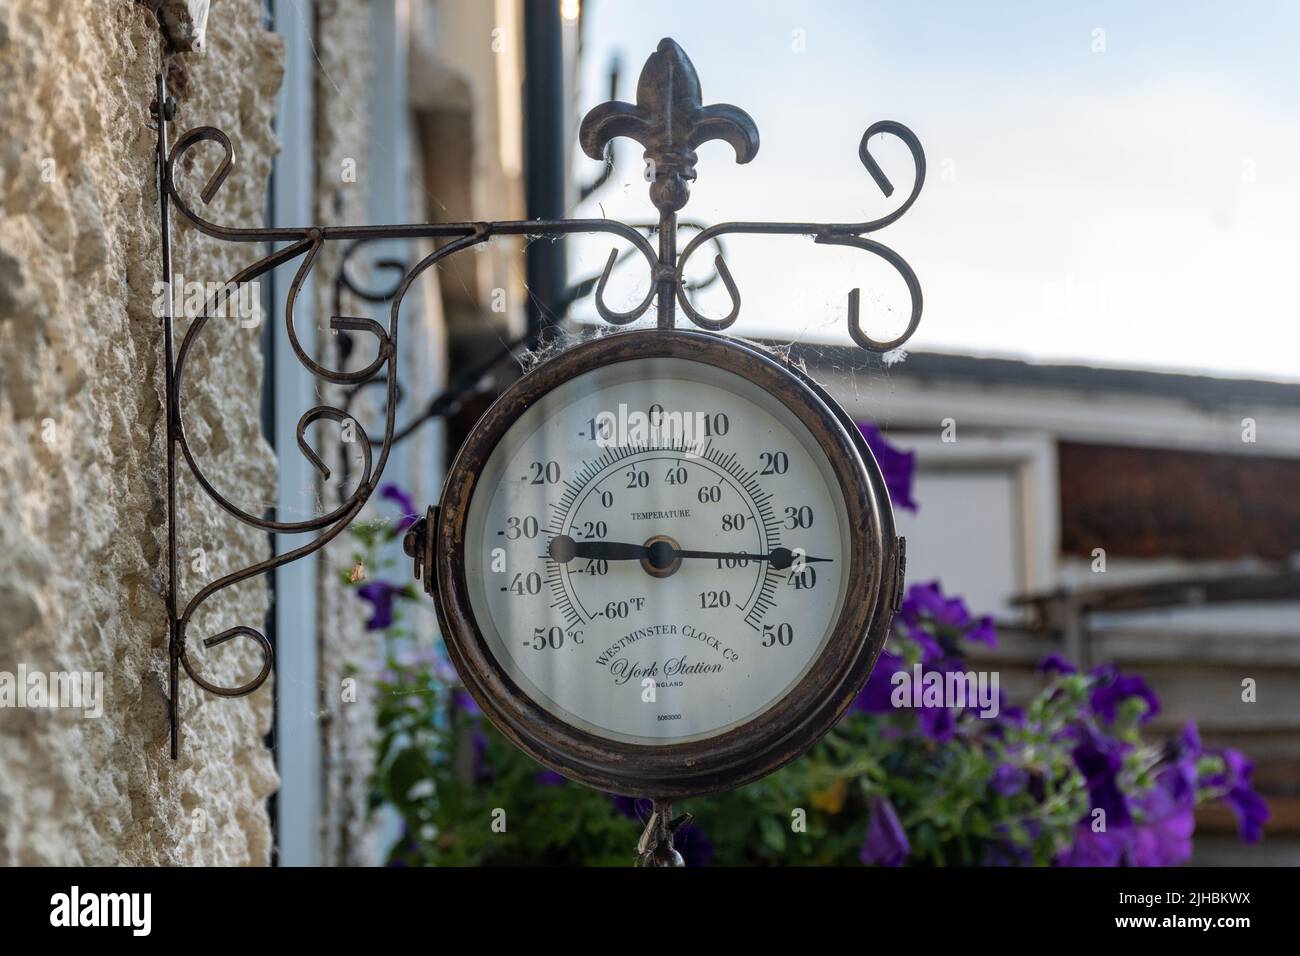 Luglio 2022 Heatwave, Hampshire, Inghilterra, Regno Unito. Un termometro da giardino indica che la temperatura è all'altezza di 30s gradi C, (100 F), avvertimento di calore estremo Foto Stock